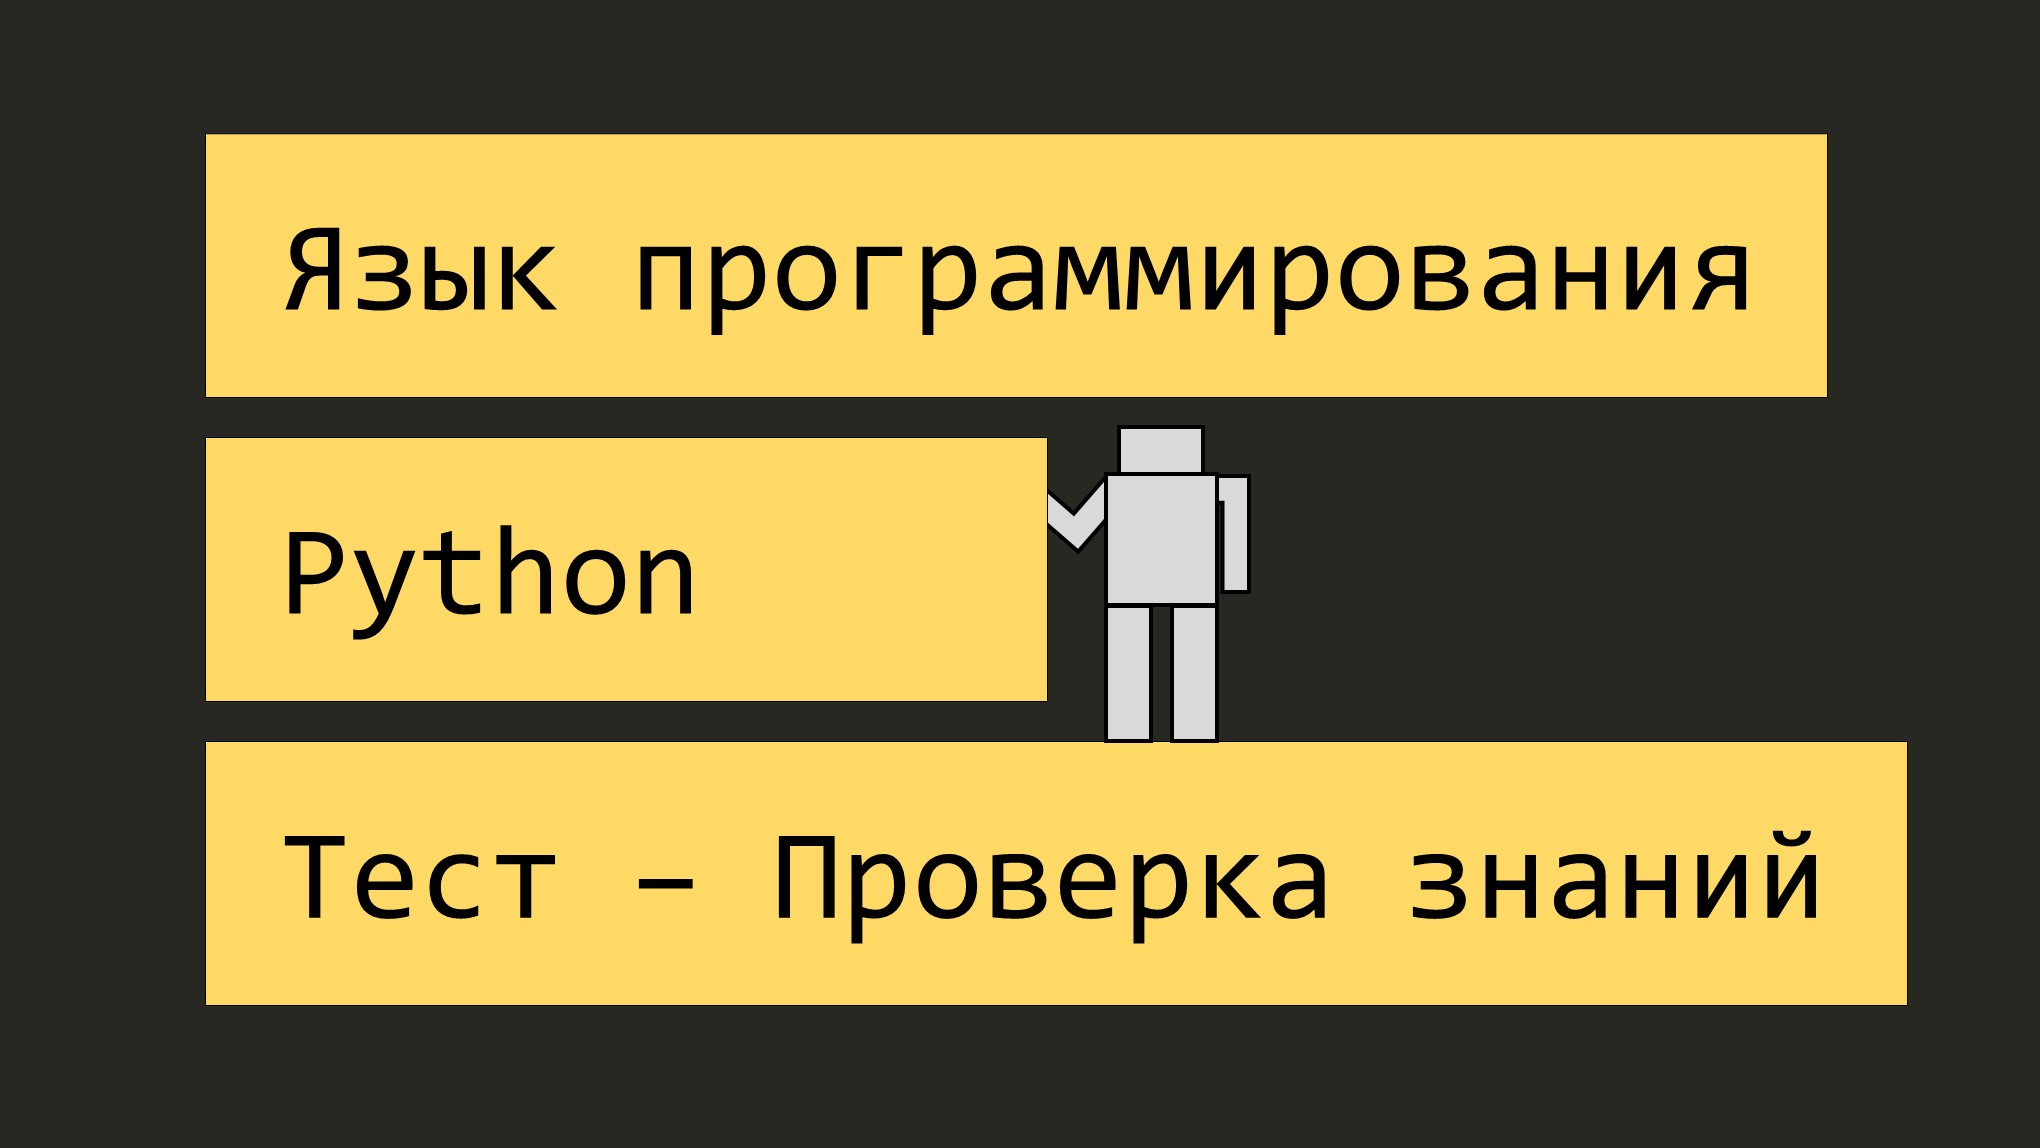 Язык программирования Python: Тест - Проверка на знание Python для начинающих